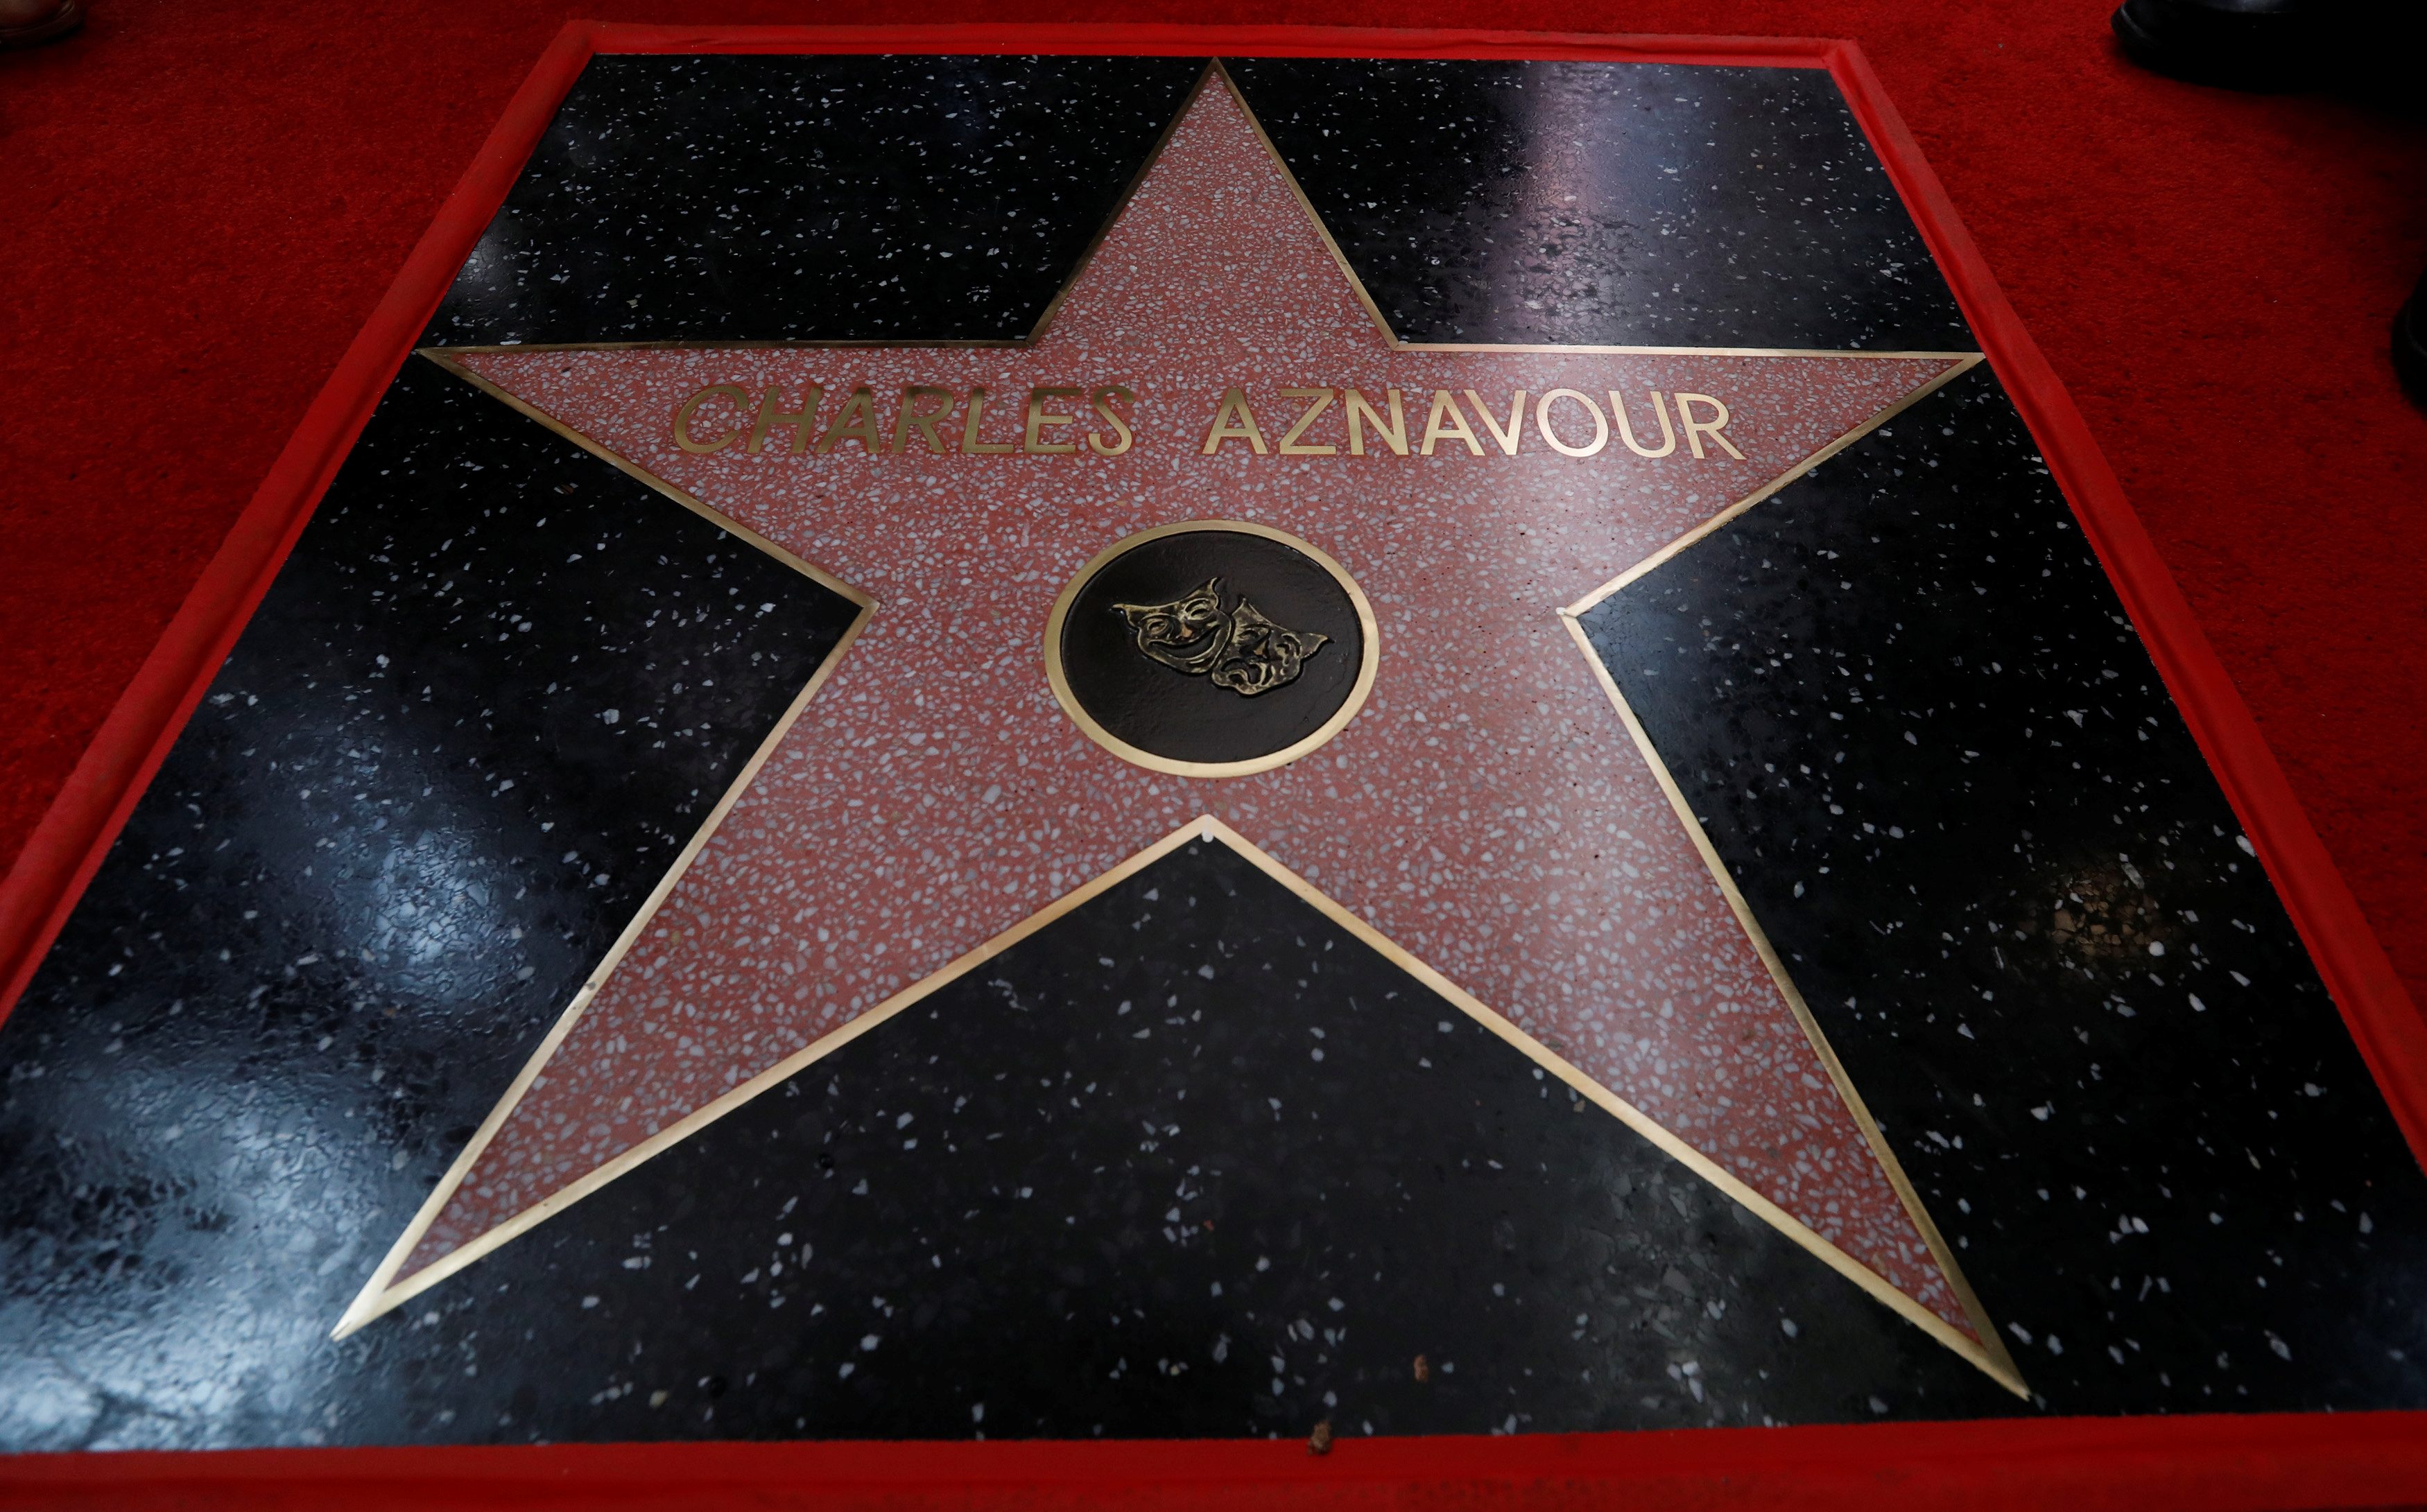 رويترز: اسم شارل أزنافور في قاعة المشاهير بهوليوود